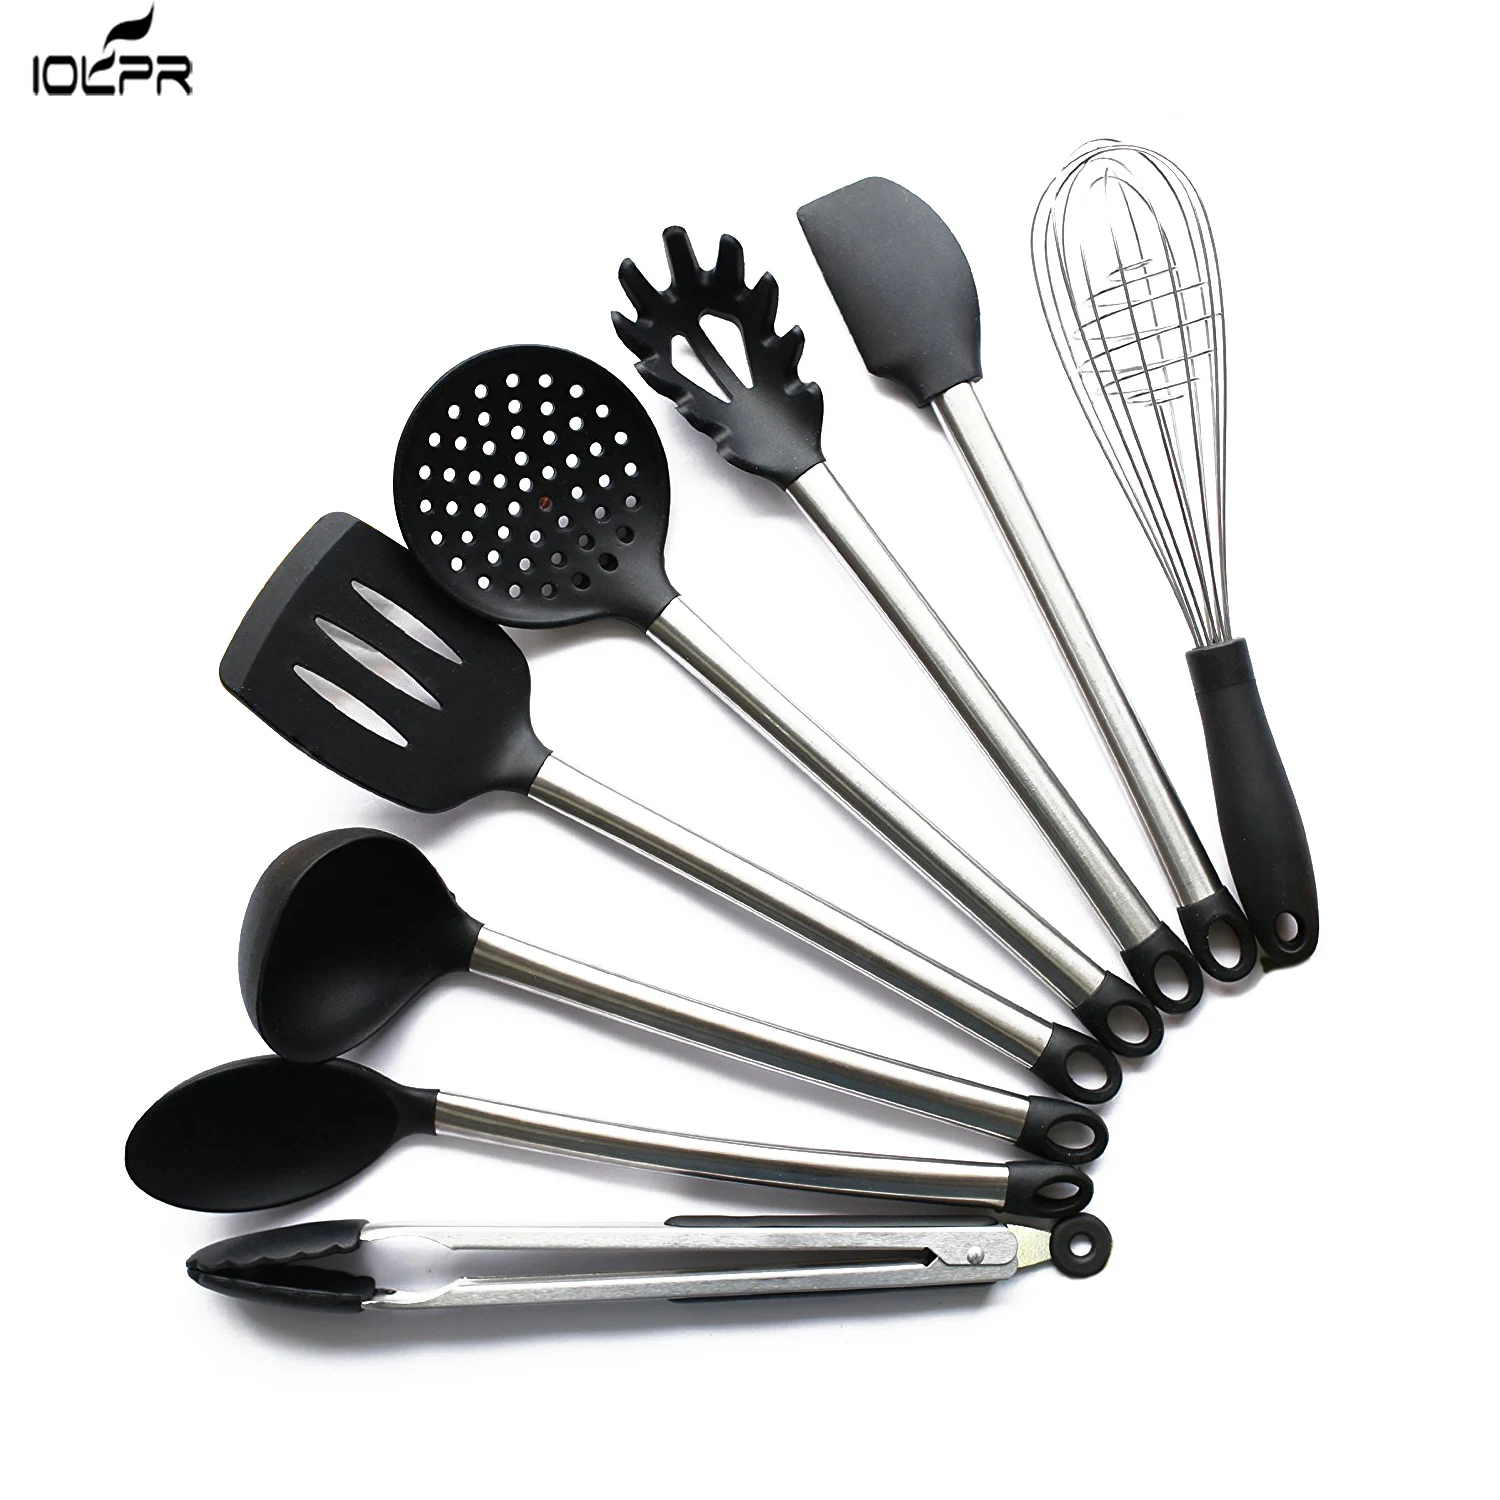 8 шт. набор кухонной посуды из нержавеющей стали и черного силикона, Современная Антипригарная посуда, инструменты для приготовления пищи, Прямая поставка